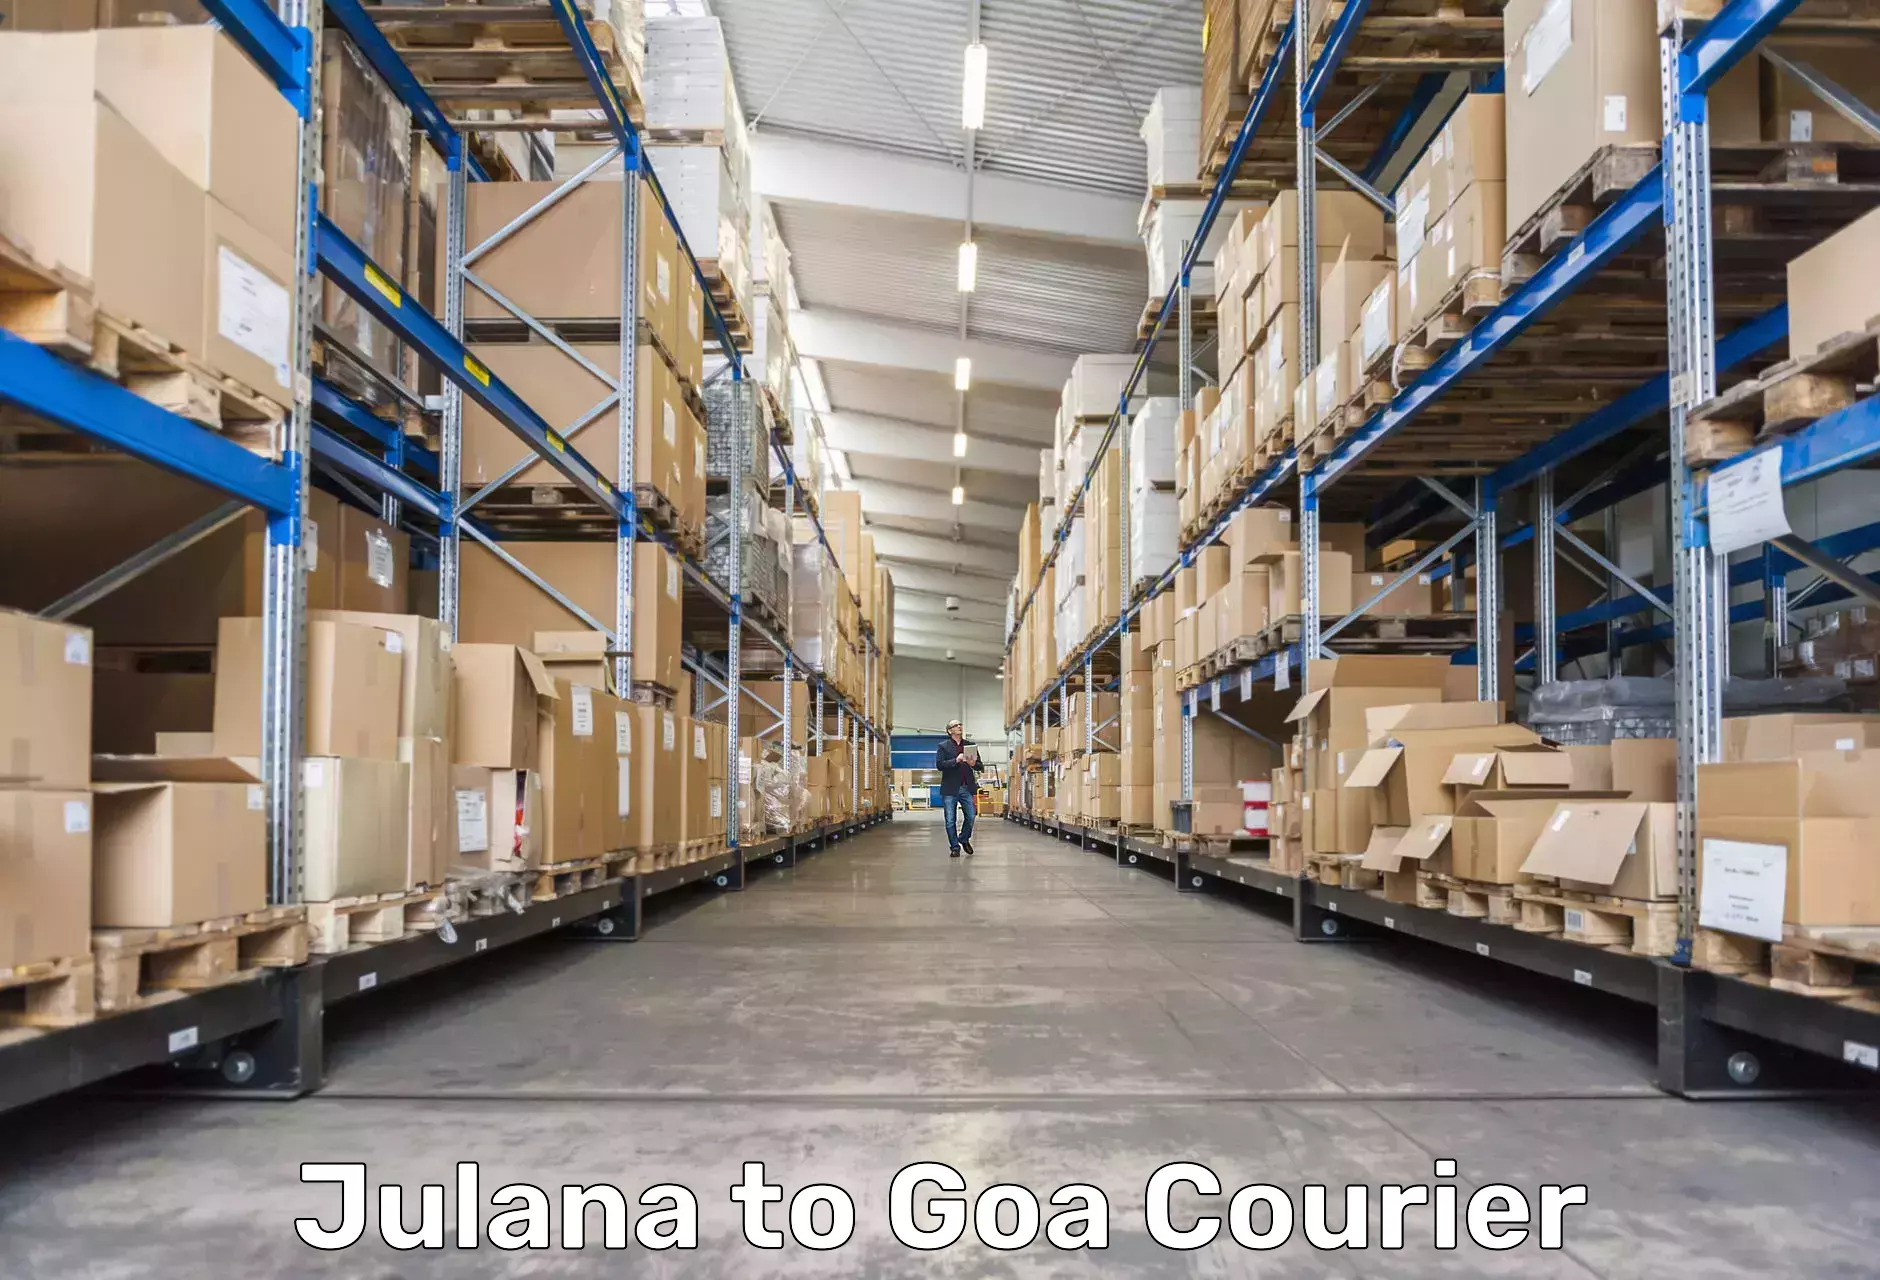 Tracking updates Julana to Vasco da Gama